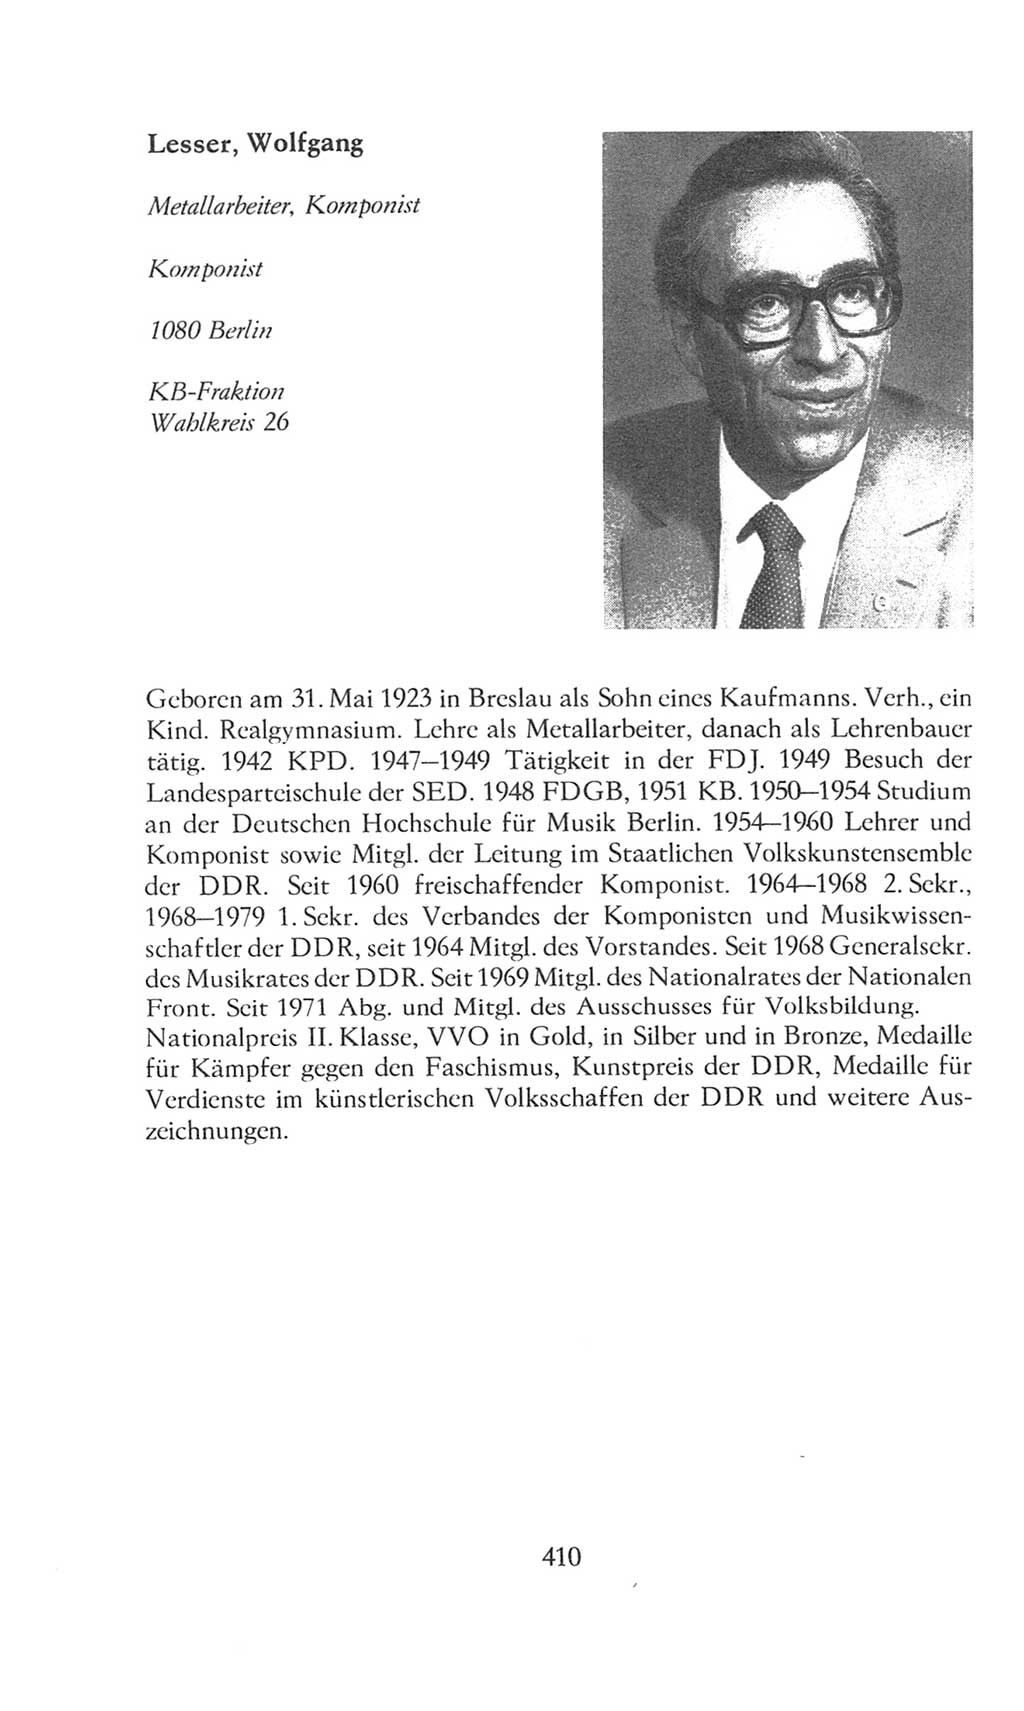 Volkskammer (VK) der Deutschen Demokratischen Republik (DDR), 8. Wahlperiode 1981-1986, Seite 410 (VK. DDR 8. WP. 1981-1986, S. 410)